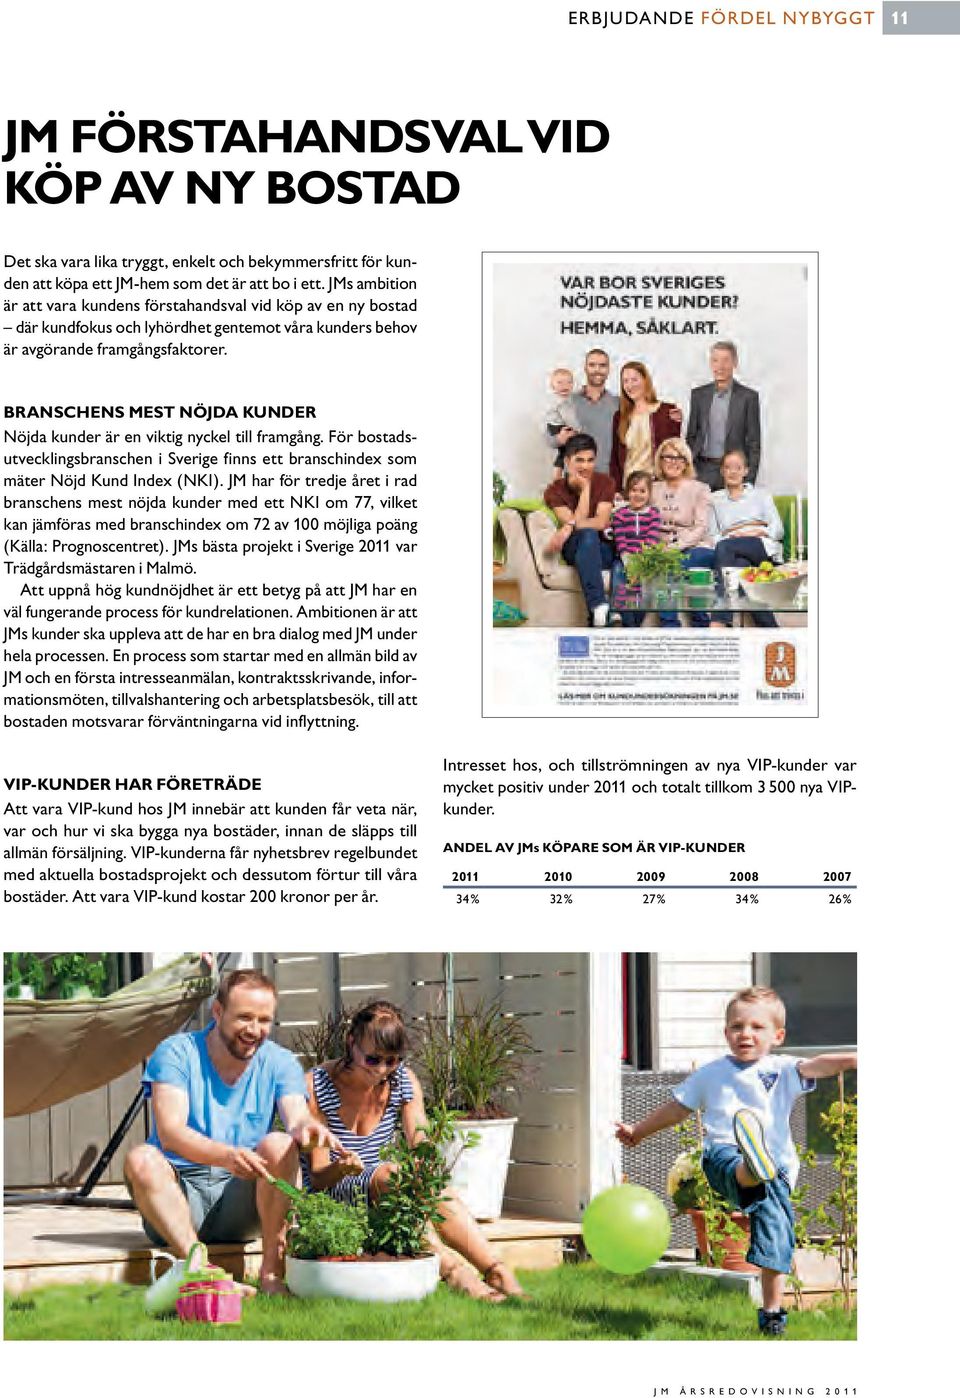 Branschens MEst nöjda kunder Nöjda kunder är en viktig nyc kel till framgång. För bostadsutvecklingsbranschen i Sverige finns ett branschindex som mäter Nöjd Kund Index (NKI).